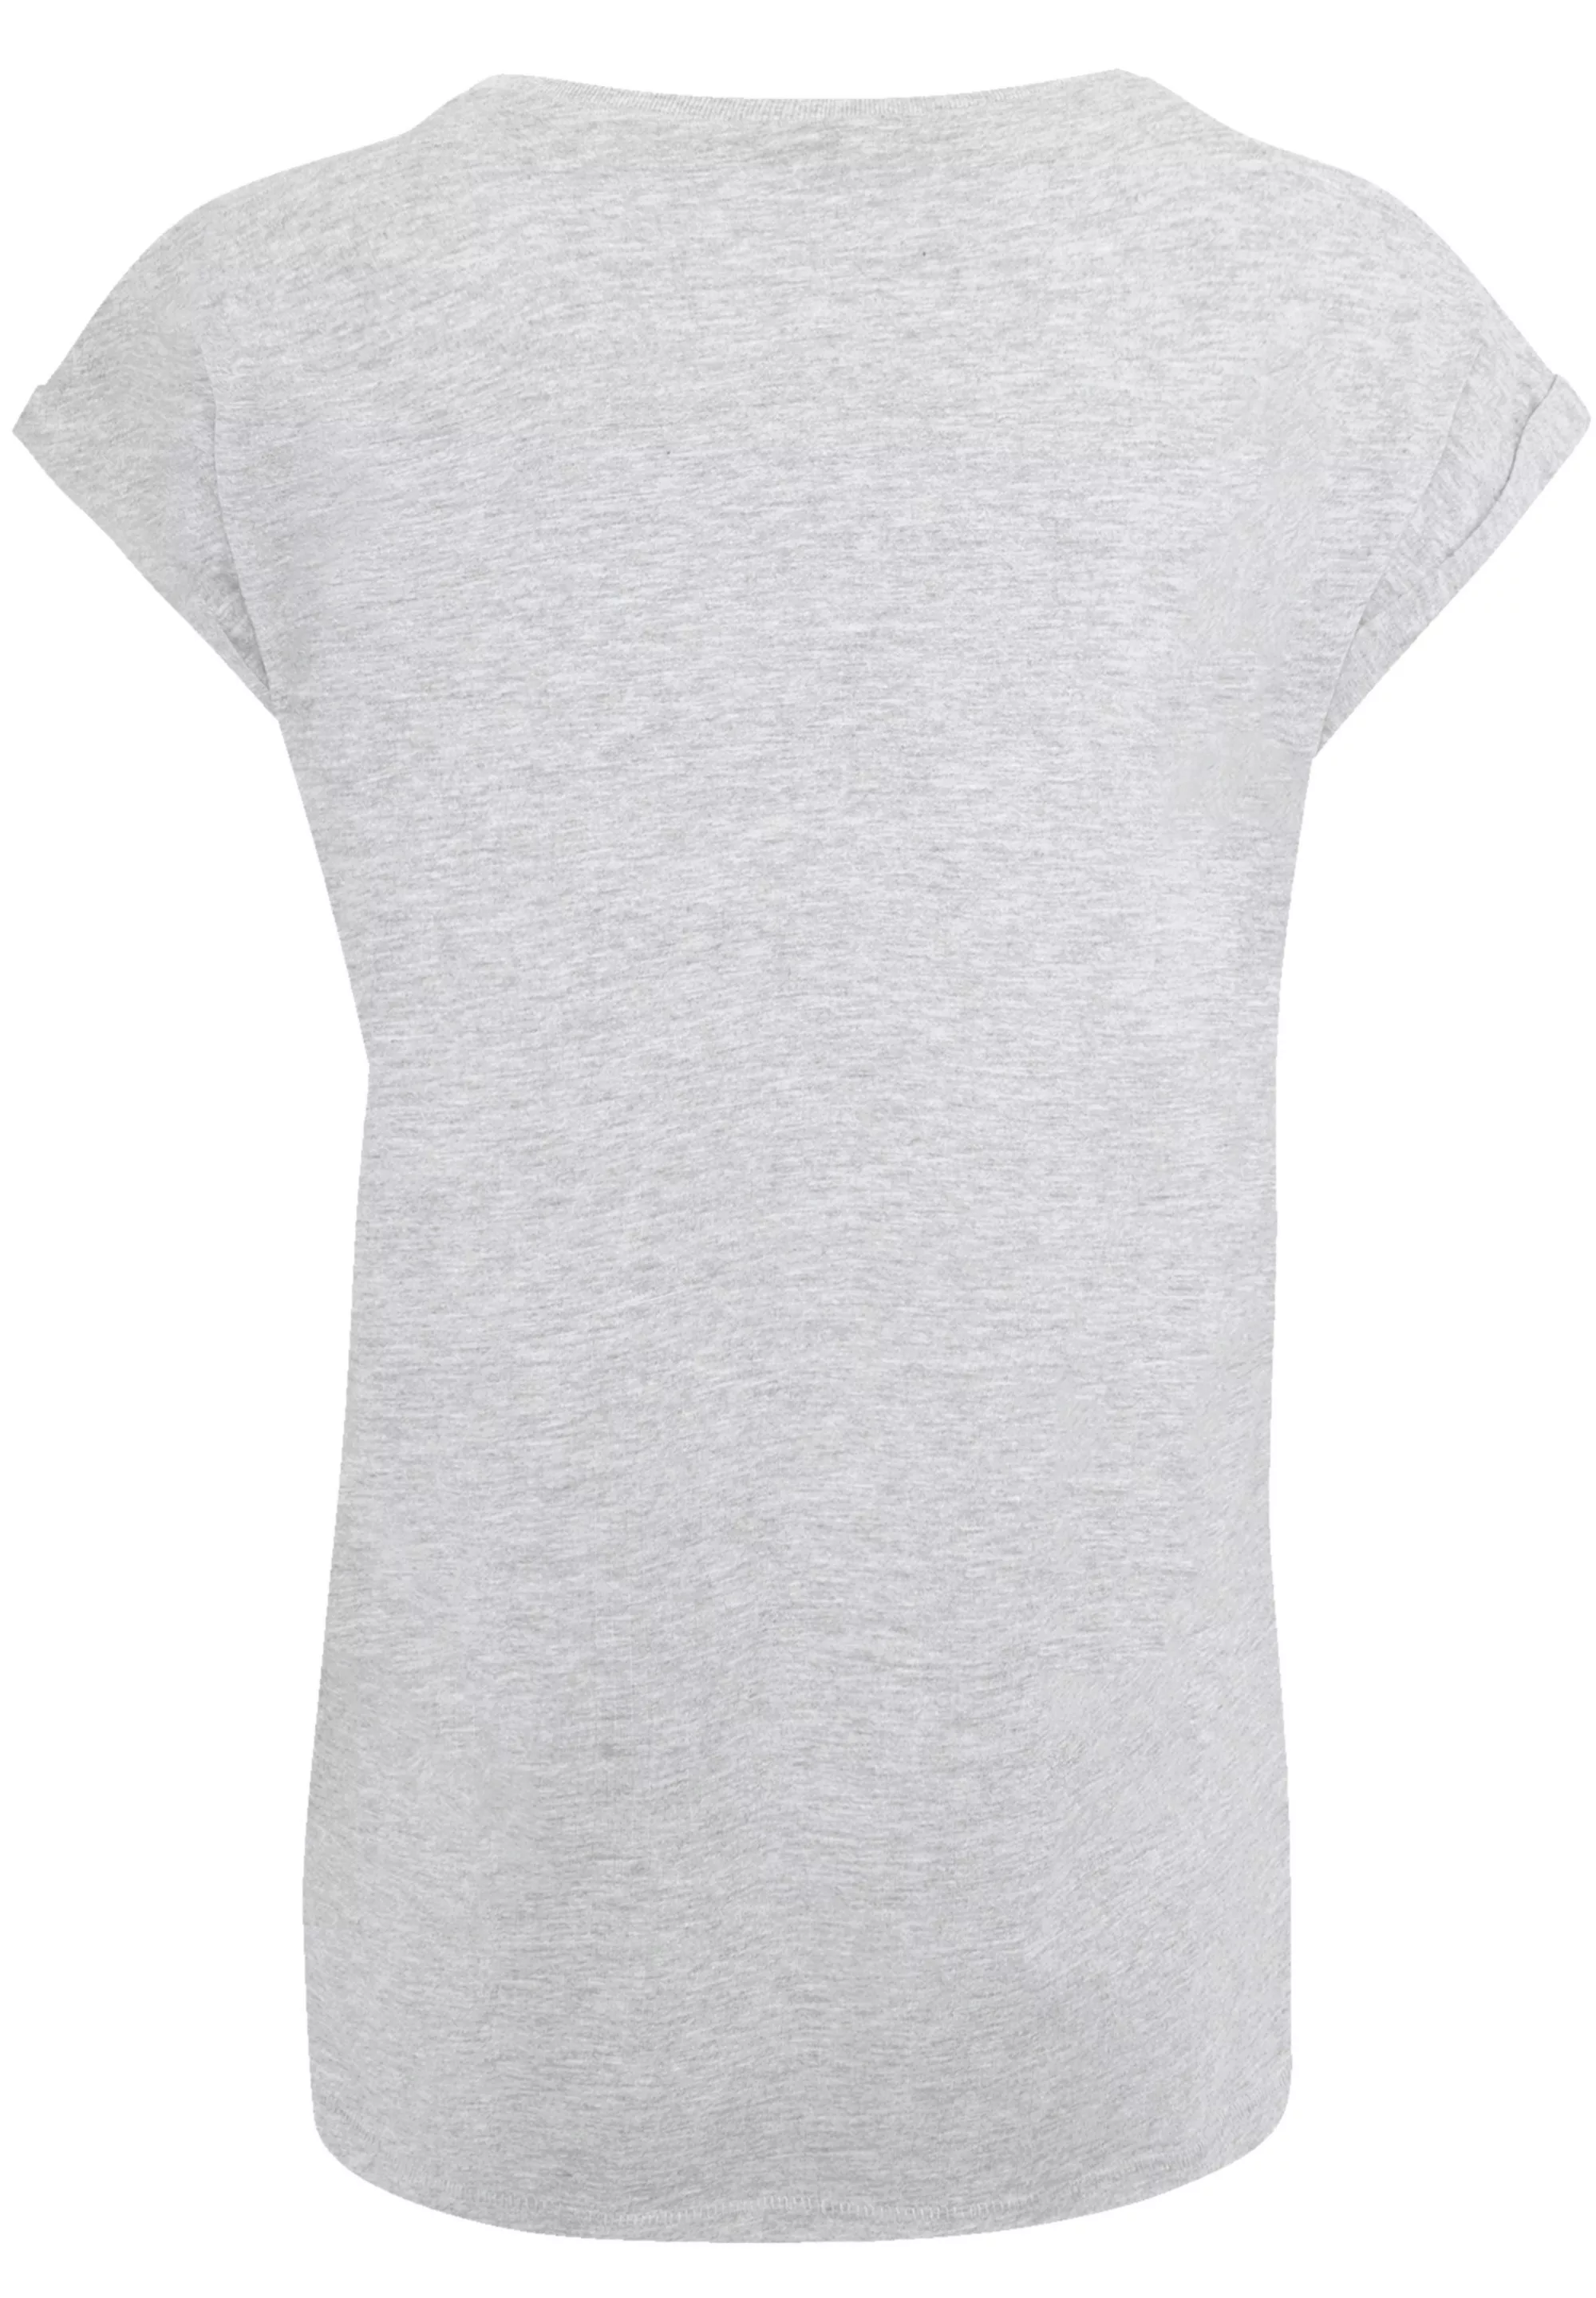 F4NT4STIC T-Shirt "SCULPTURE", Print günstig online kaufen